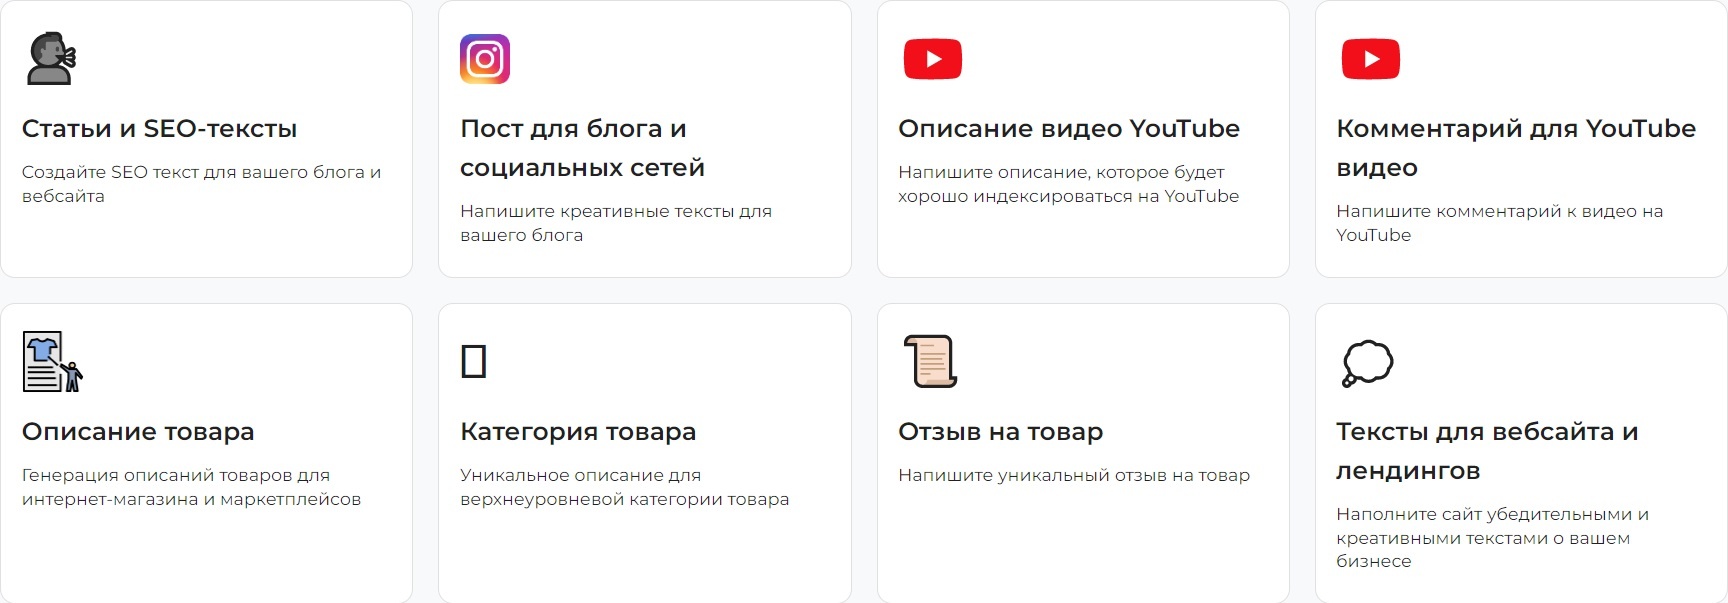 CopyMonkey запустил русскоязычного AI-«копирайтера»: пишет тексты для бизнеса